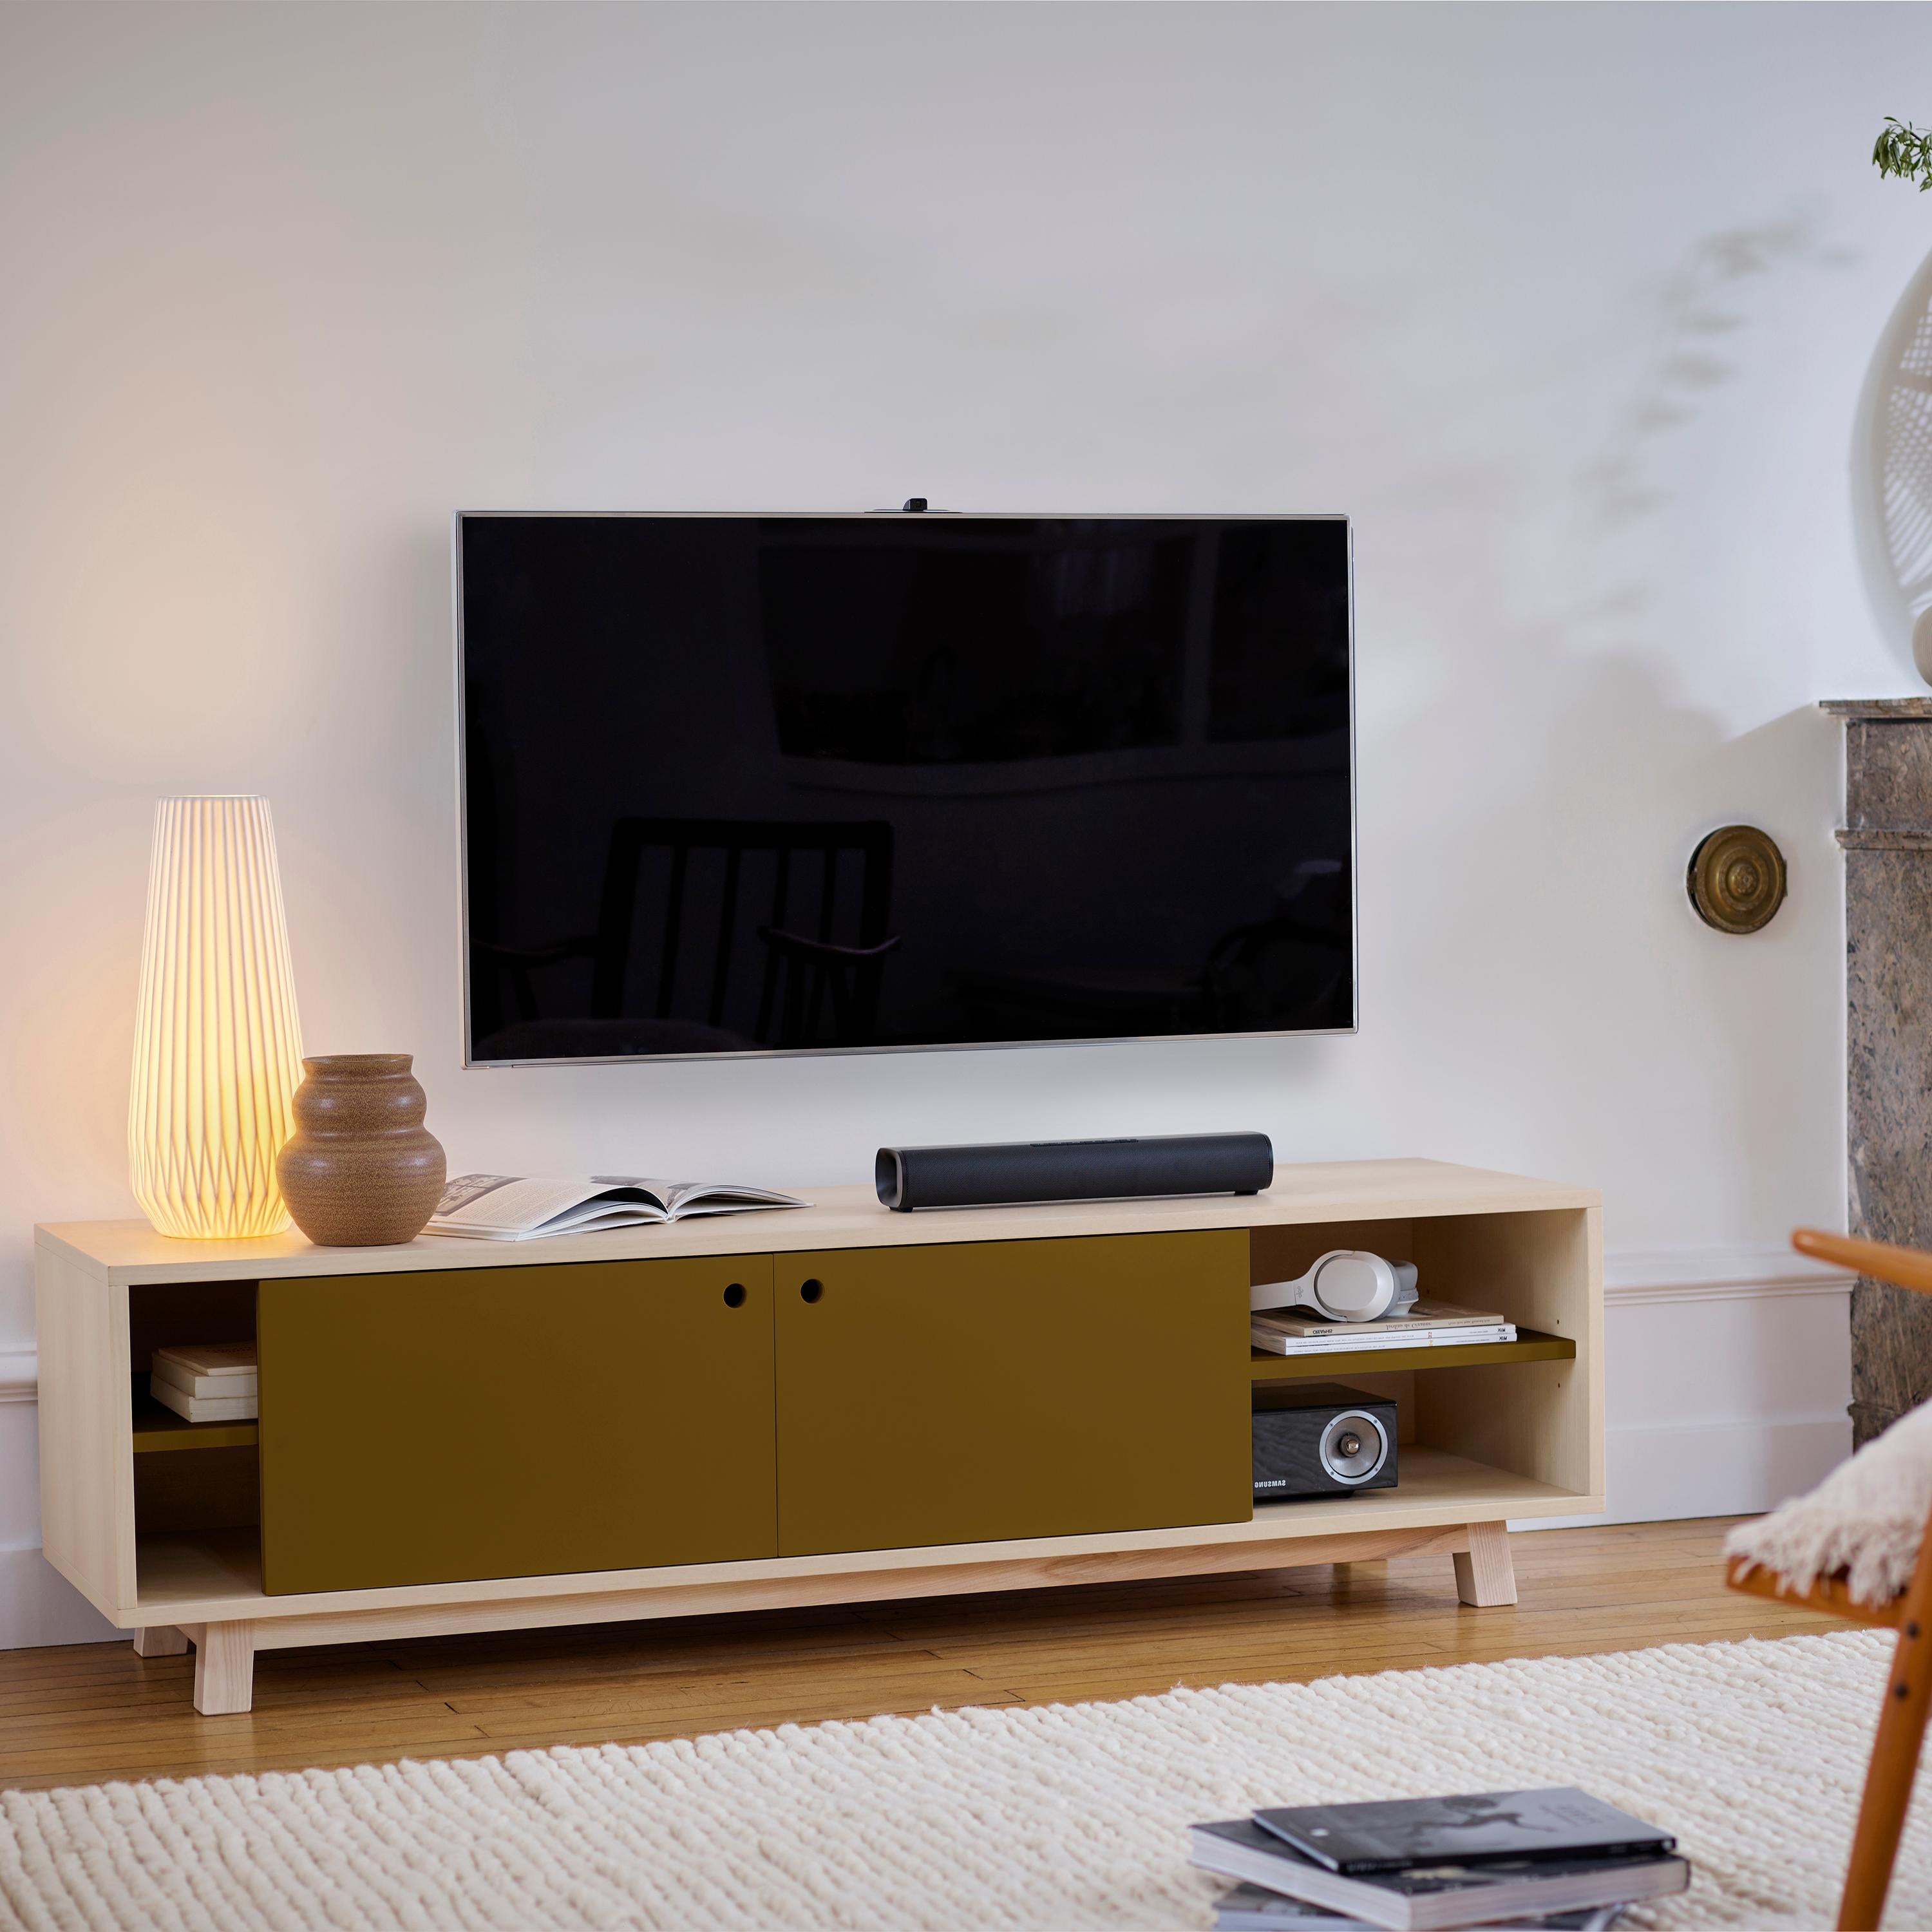 Ce meuble TV avec 2 portes coulissantes est conçu par Eric Gizard - Paris.

Il est 100% fabriqué en France avec du frêne massif et plaqué et des portes en MDF laqué. 

Pour tirer la porte, utilisez l'œillet rond. 
2 tablettes en bois réglables sur